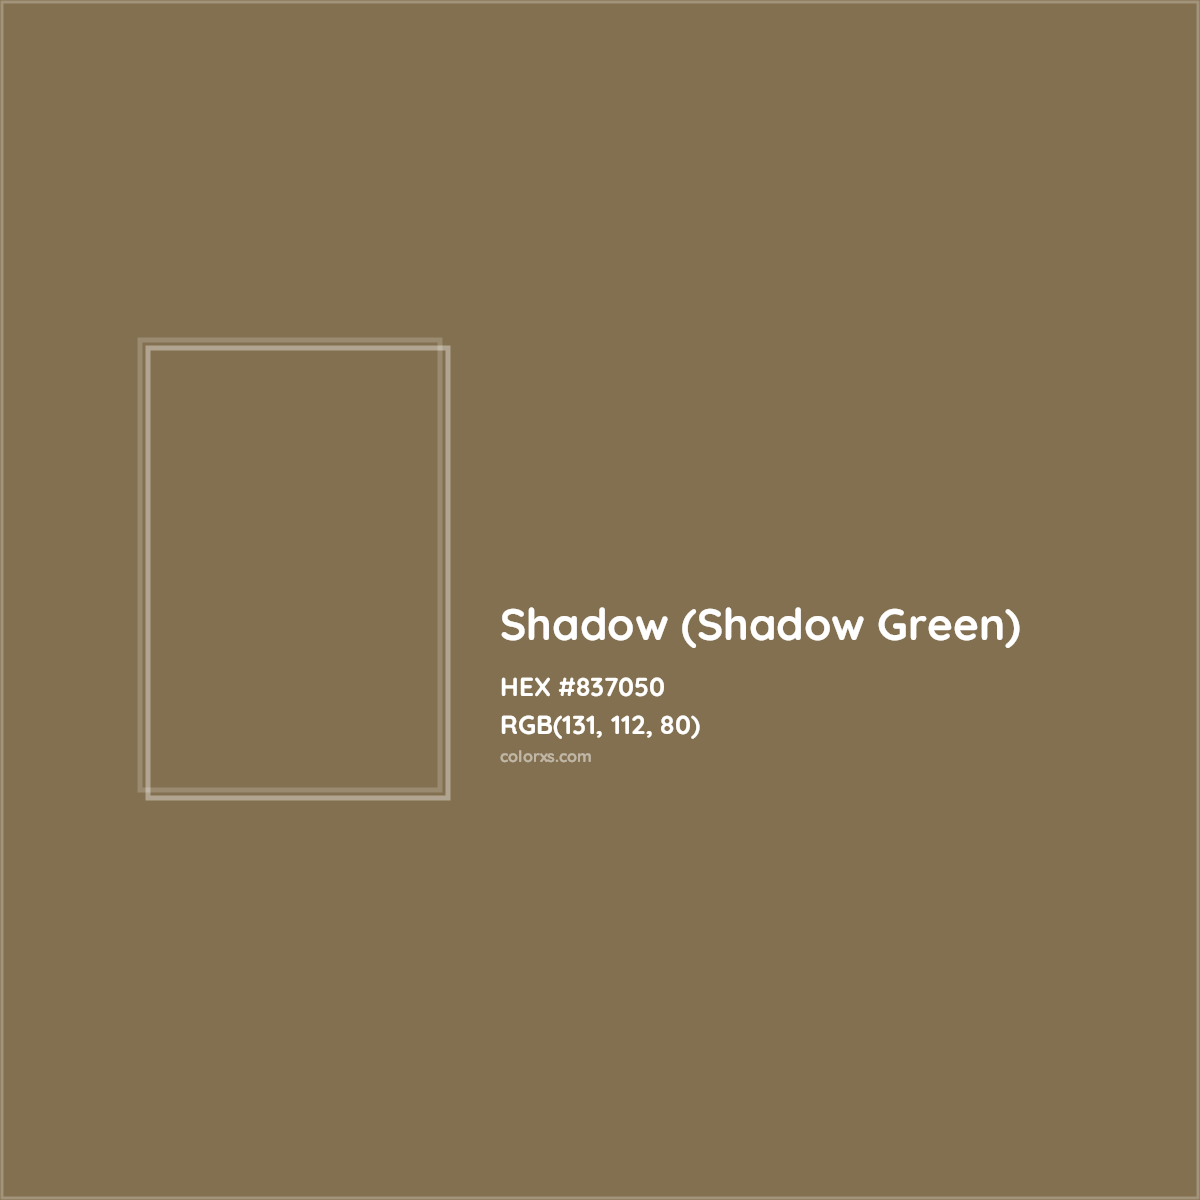 HEX #837050 Shadow (Shadow Green) Color Crayola Crayons - Color Code